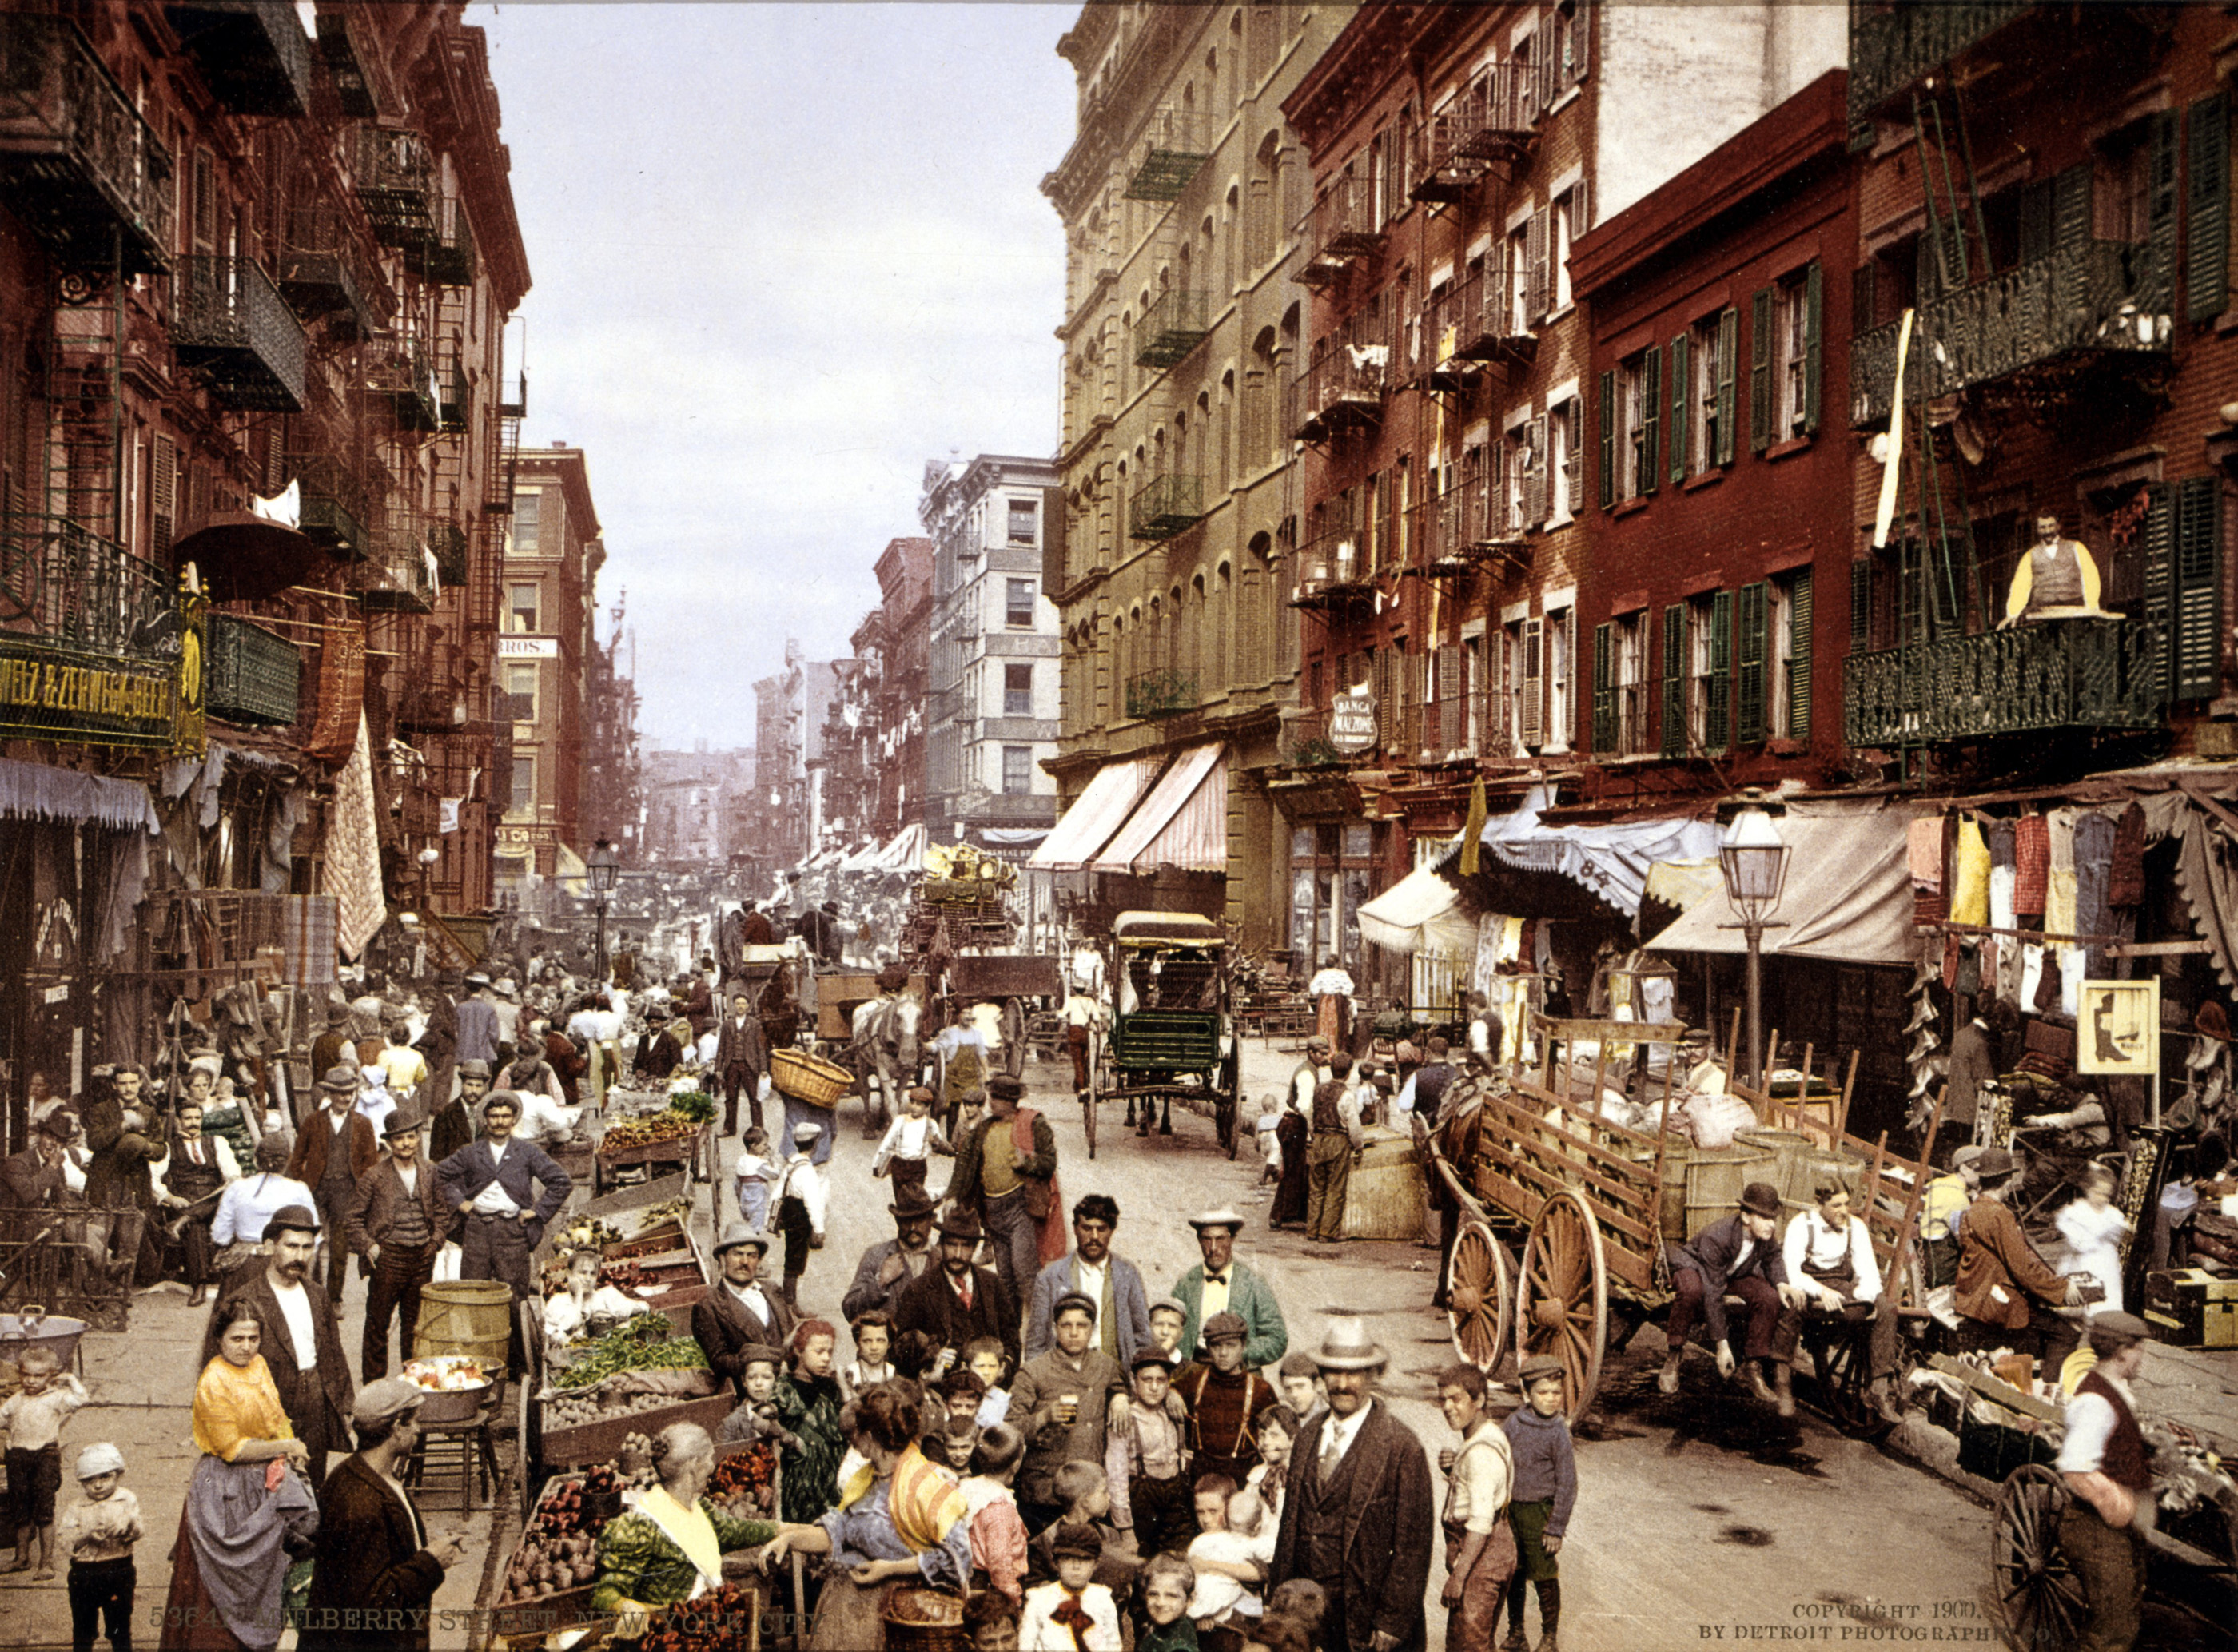 Manhattani utcakép a századforduló idejéből (fotó: Wikipedia)